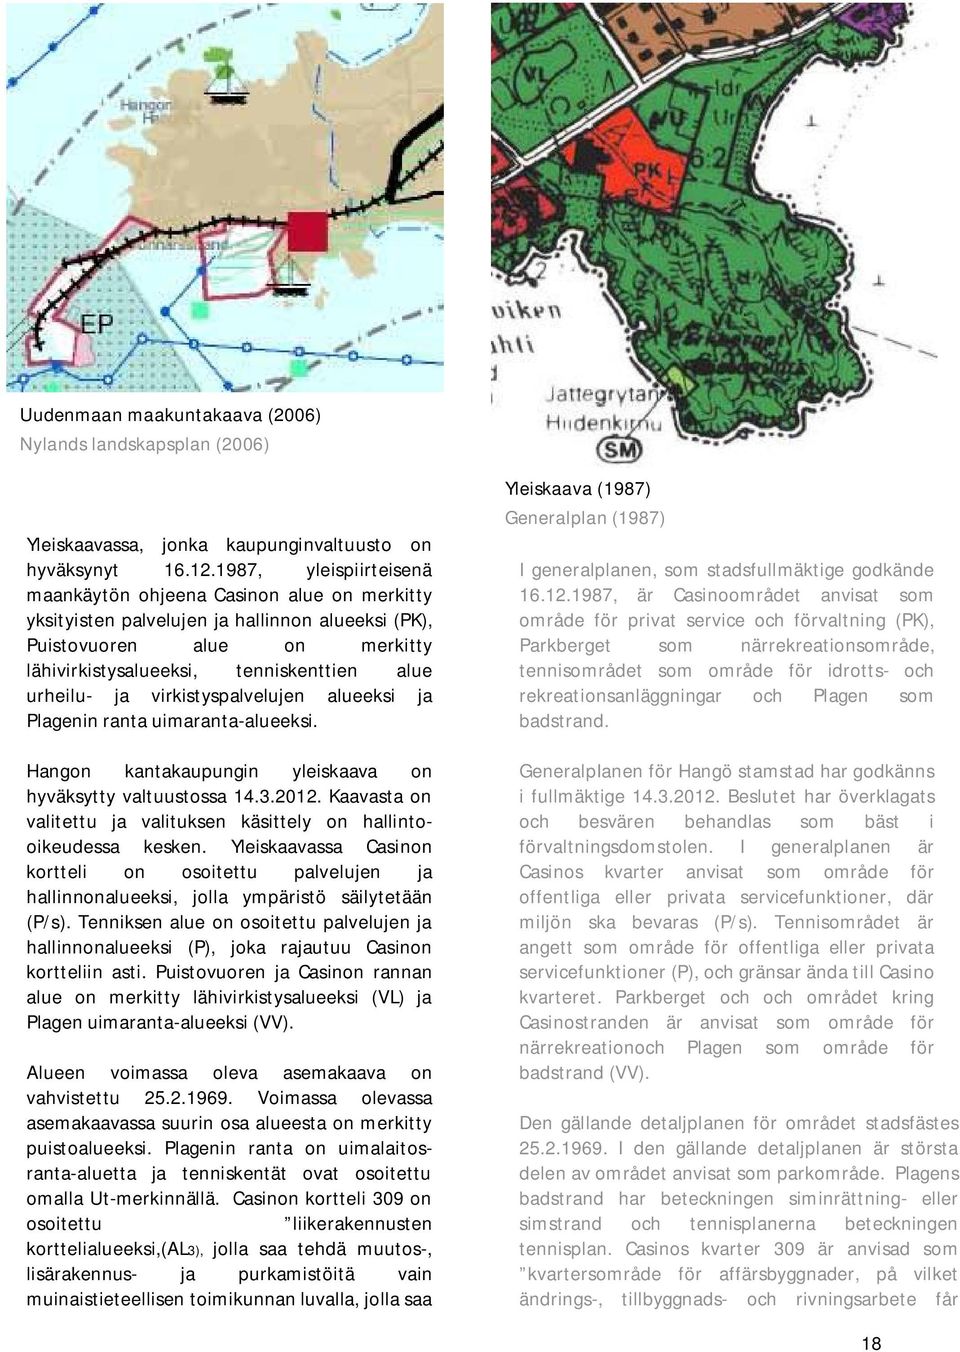 ja virkistyspalvelujen alueeksi ja Plagenin ranta uimaranta-alueeksi. Hangon kantakaupungin yleiskaava on hyväksytty valtuustossa 14.3.2012.